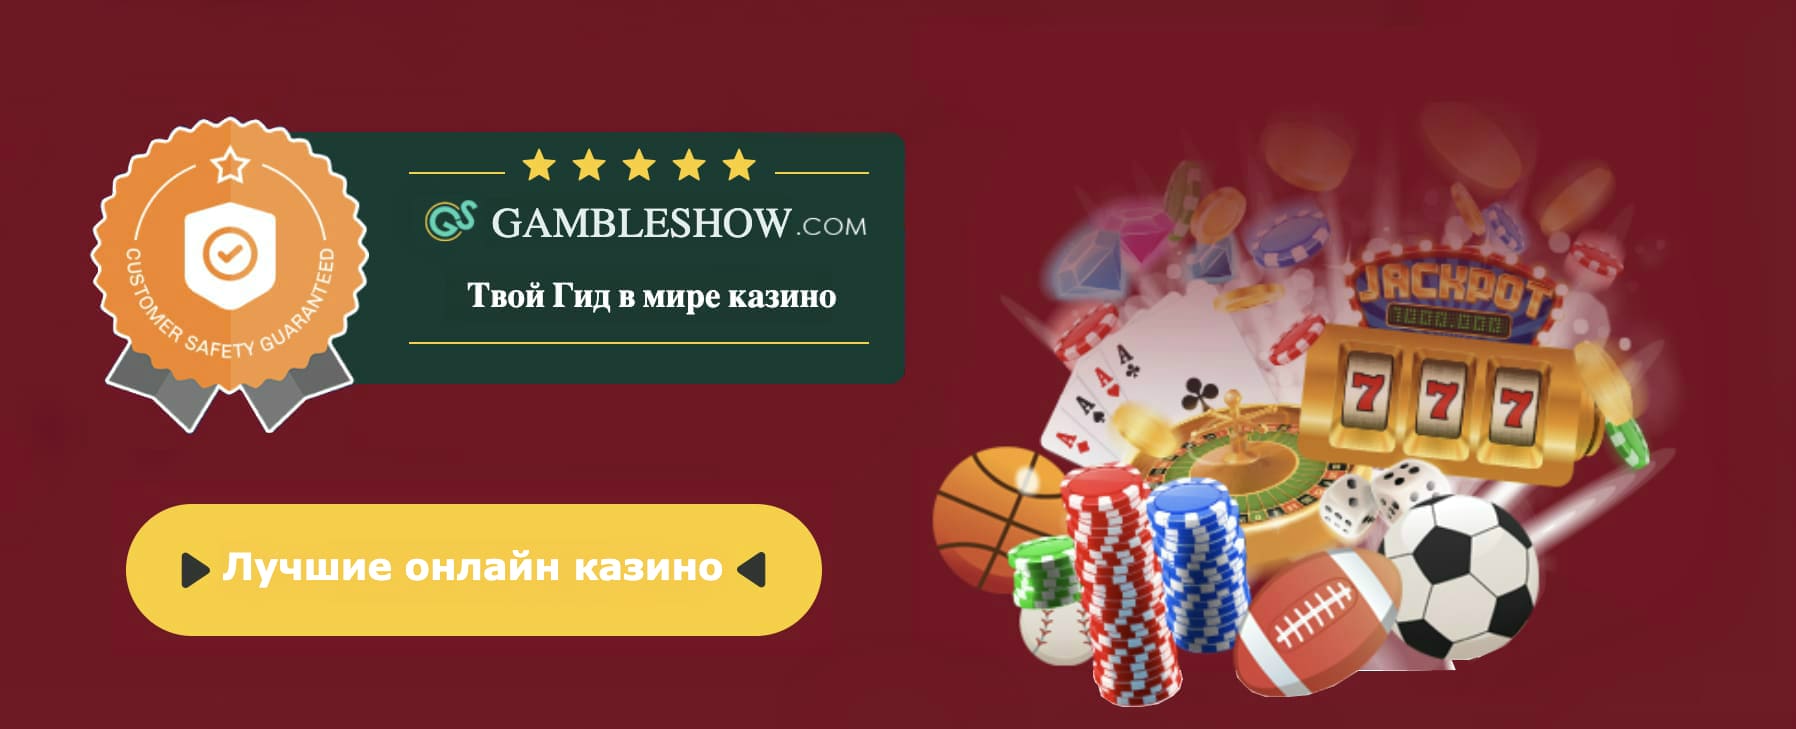 Casino king rozvadov